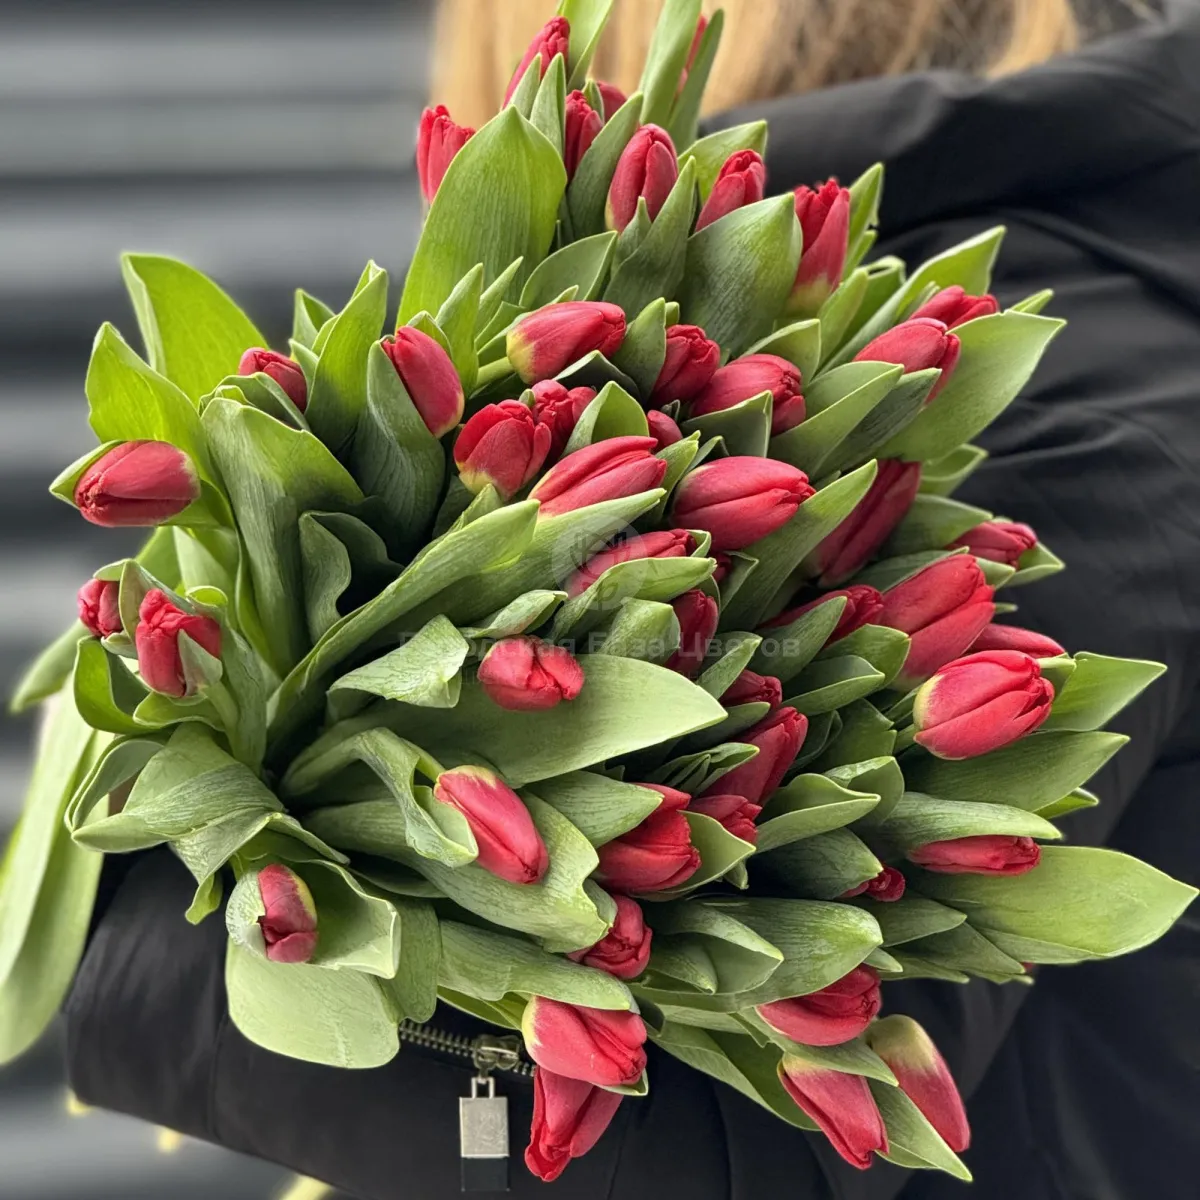 49 красных тюльпанов